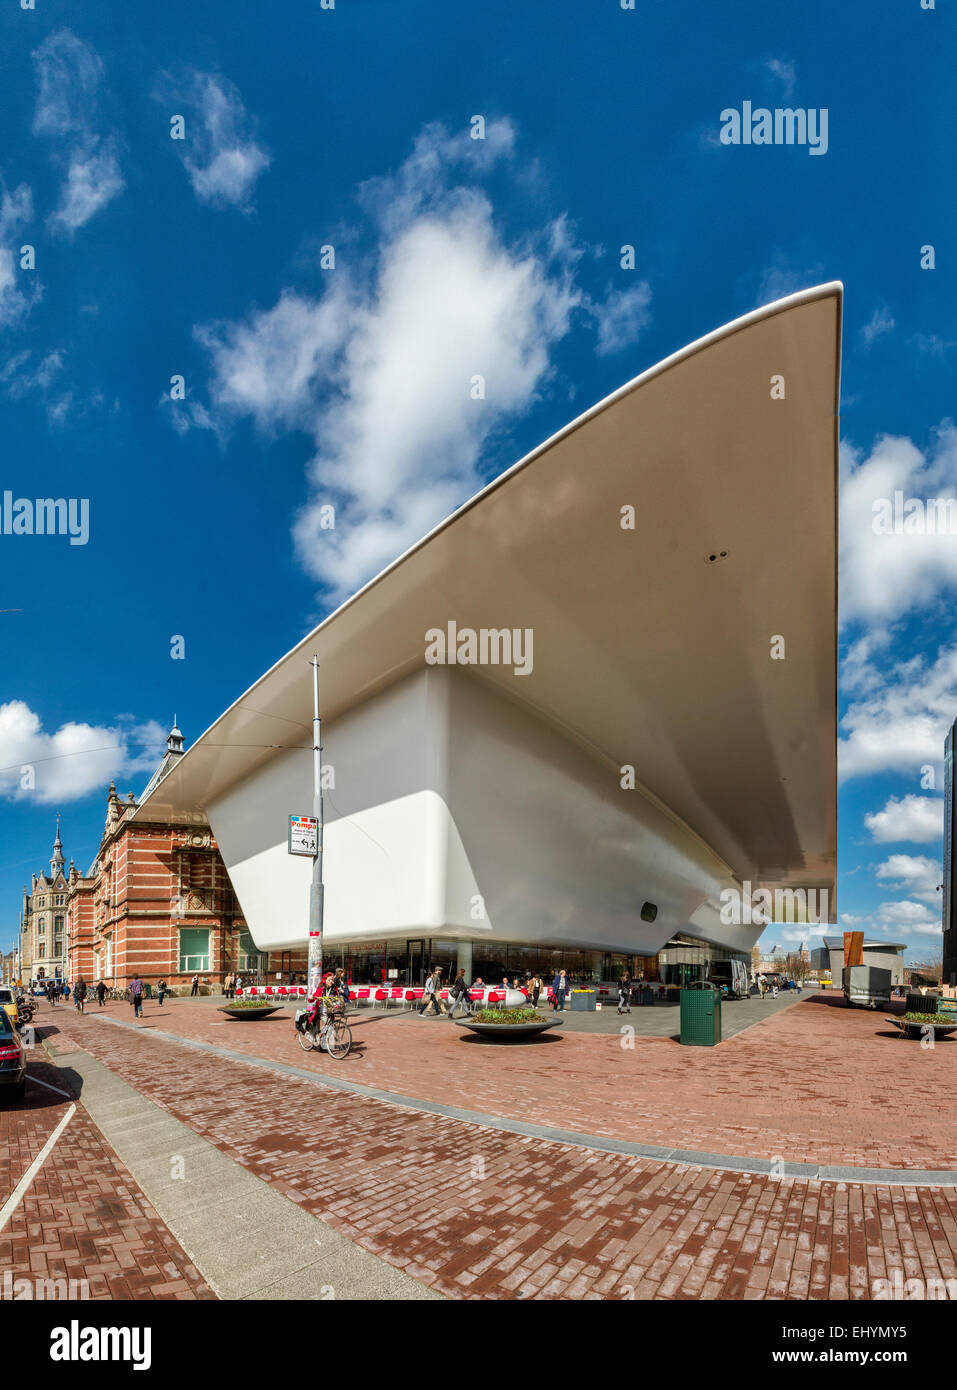 Paesi Bassi, Olanda, Europa Amsterdam Museum Square, il Museo Stedelijk, città, villaggio, molla, persone Foto Stock